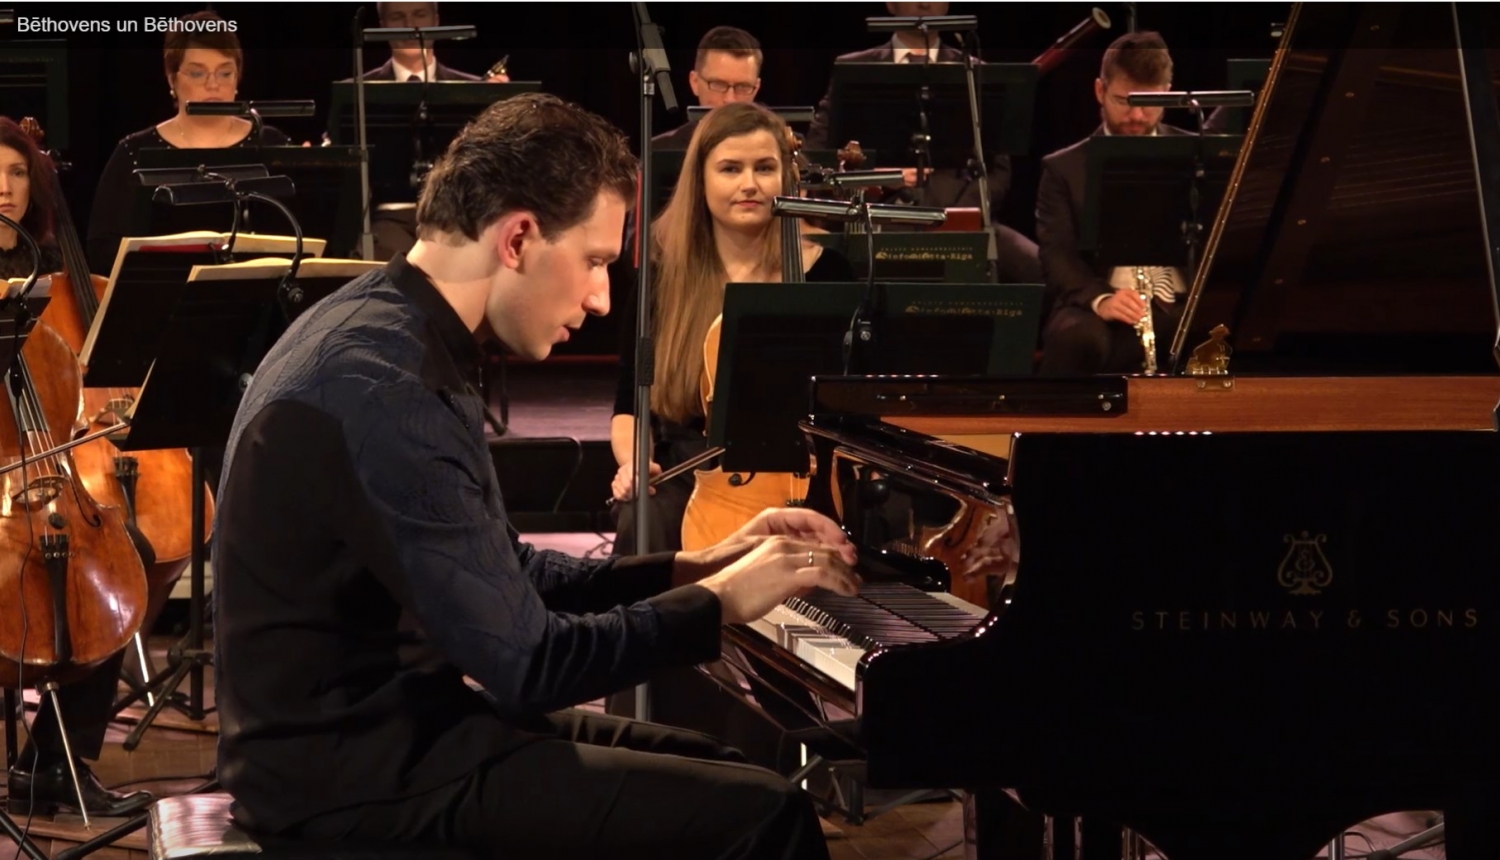 Pianists Reinis Zariņš koncertā “Bēthovens un Bēthovens”.